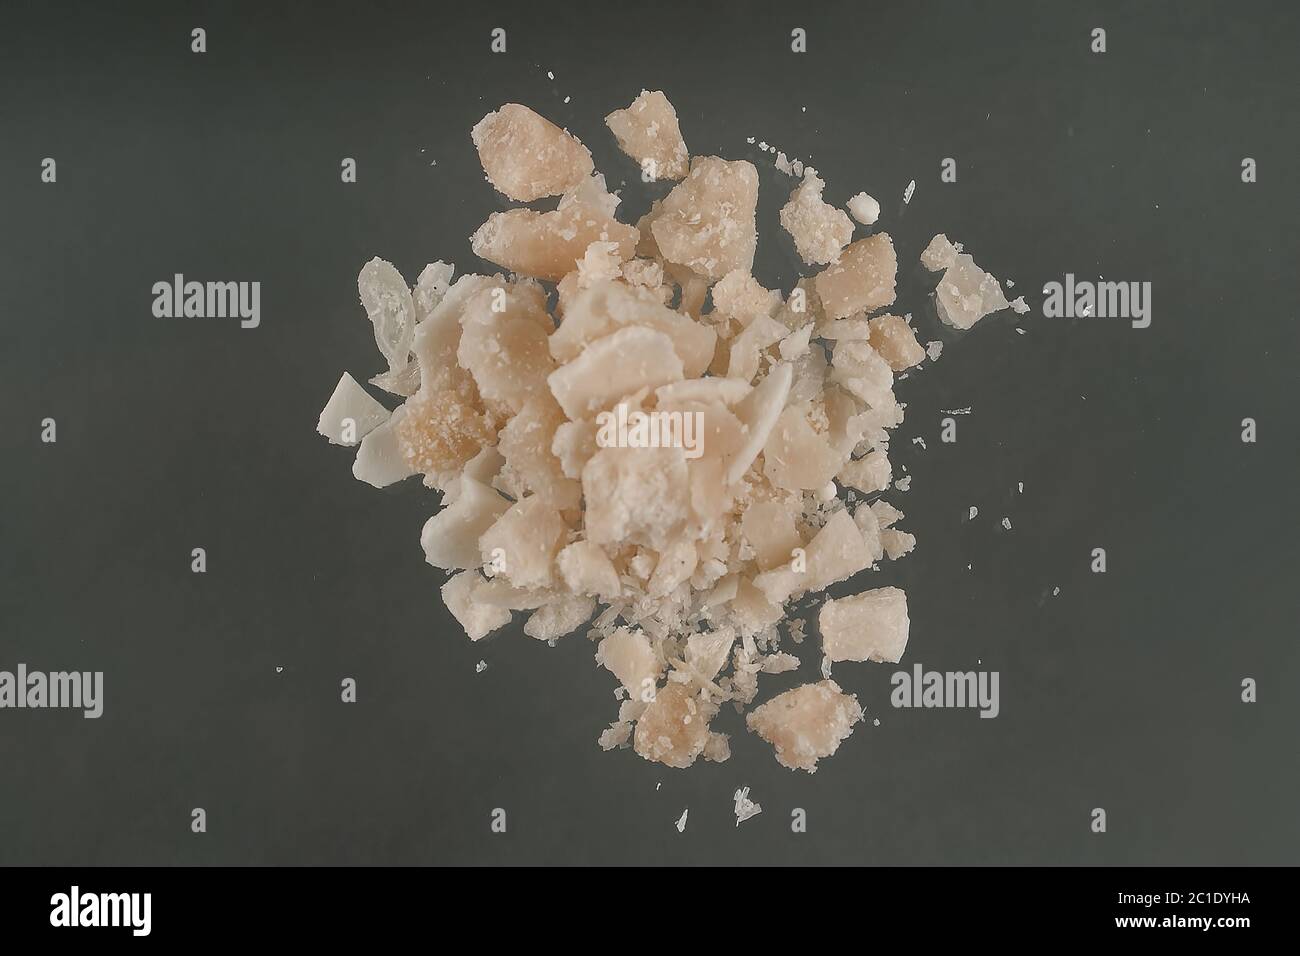 La cocaina crack è una forma di cocaina che può essere fumata. Anche chiamato rock, lavoro, duro, ferro, cavvy, base. Principalmente conosciuto come crack Foto Stock